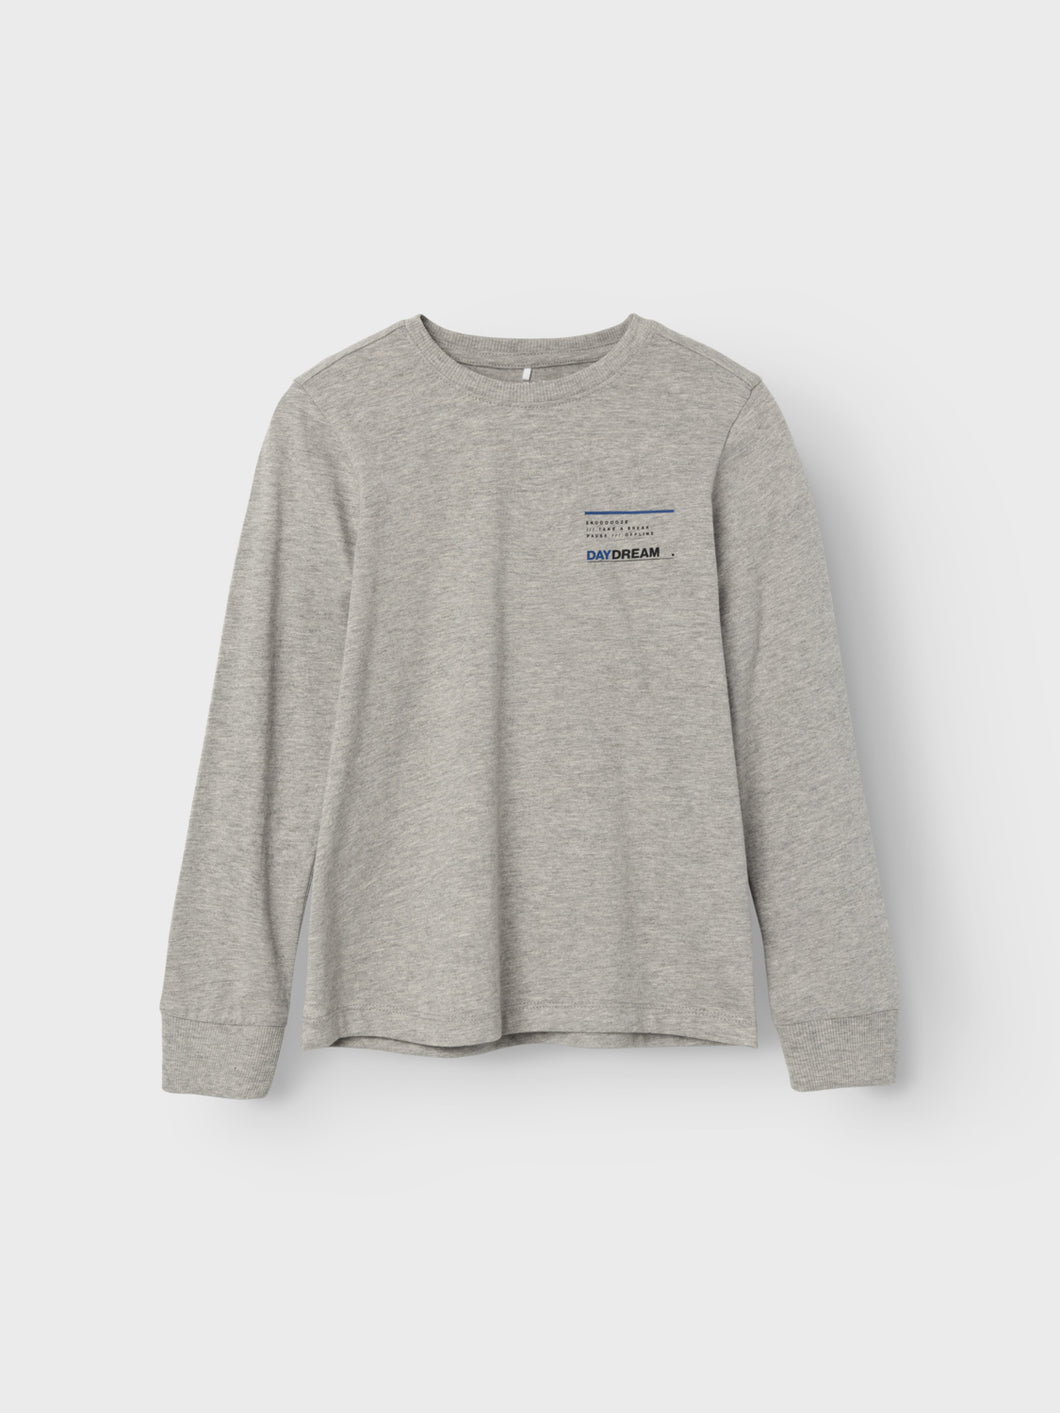 NKMODENZ T-Shirts & Tops - Grey Melange